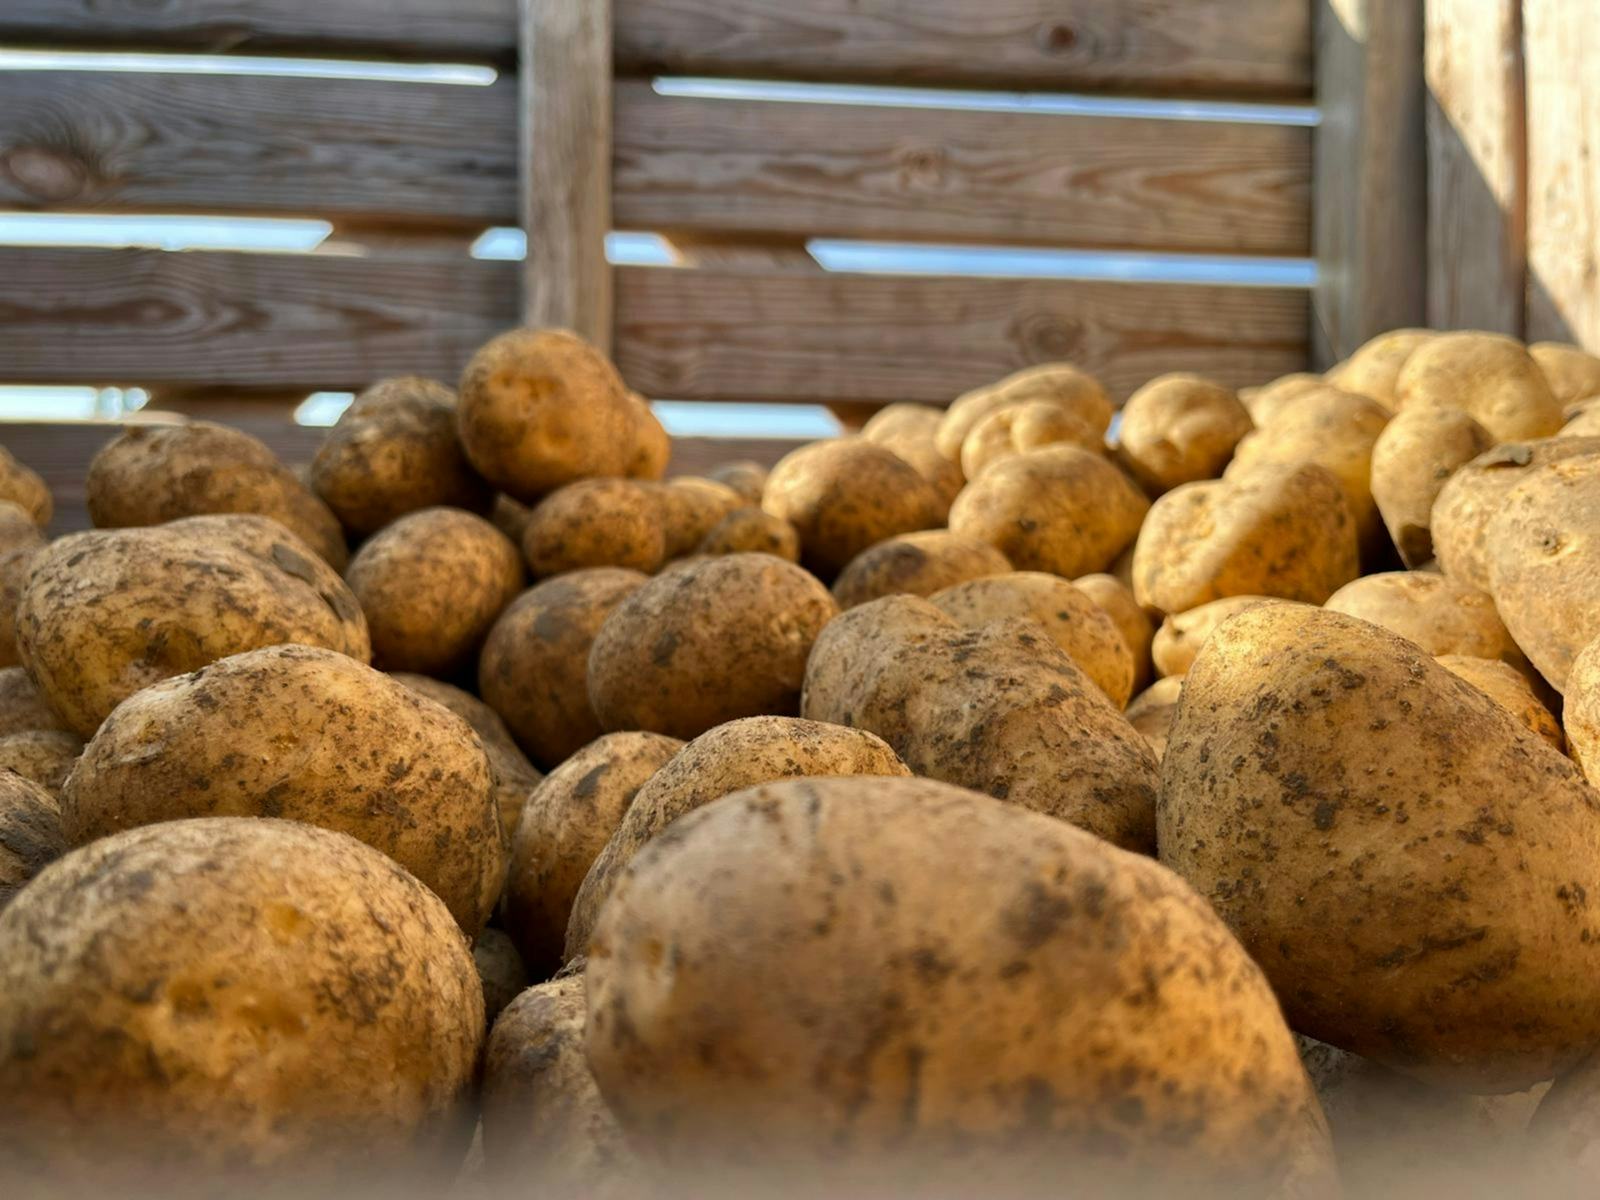 Kartoffeln mehligkochend 20kg, produit artisanal en vente directe en Suisse